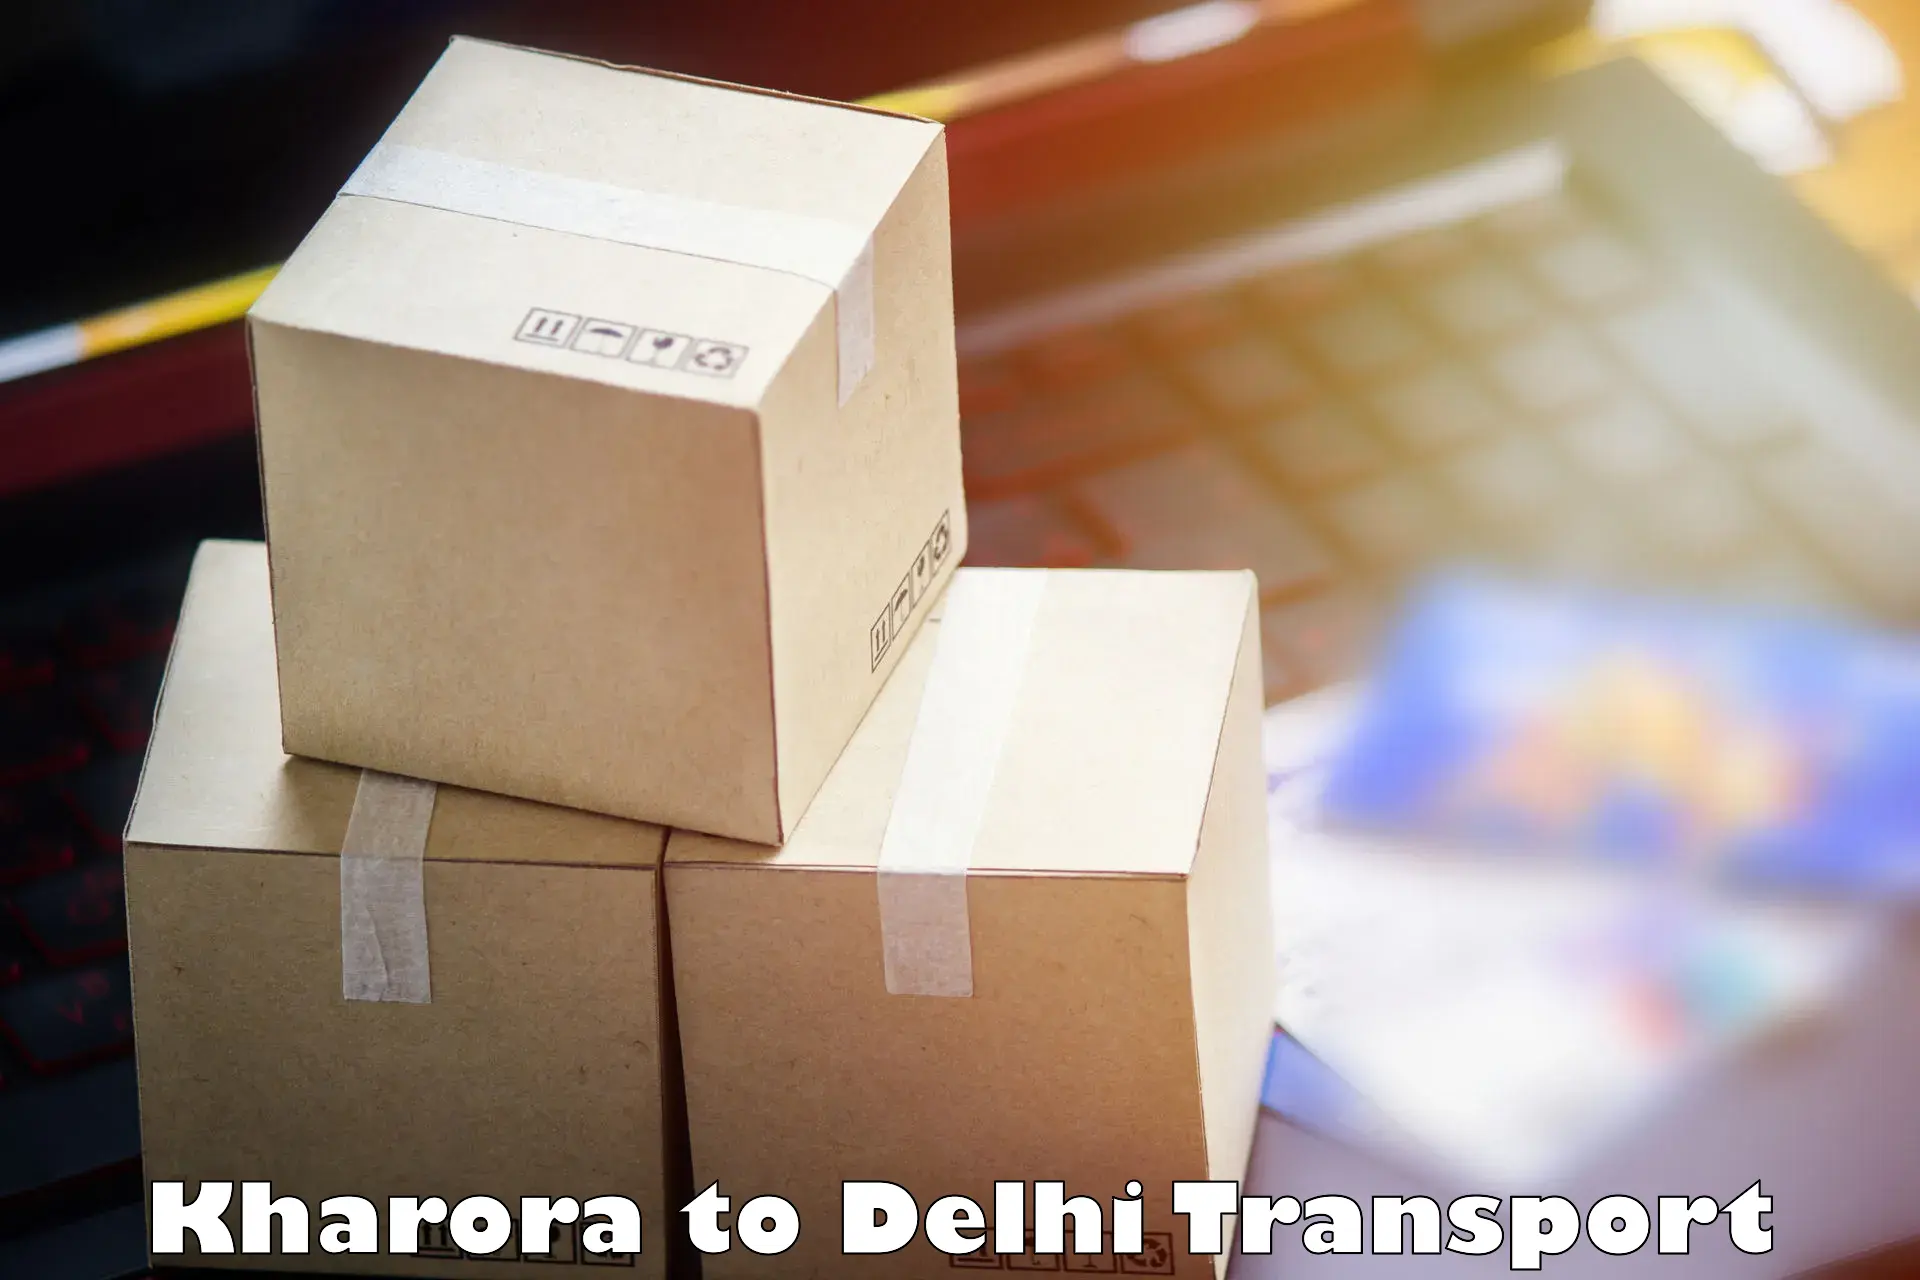 Online transport service Kharora to Ashok Vihar